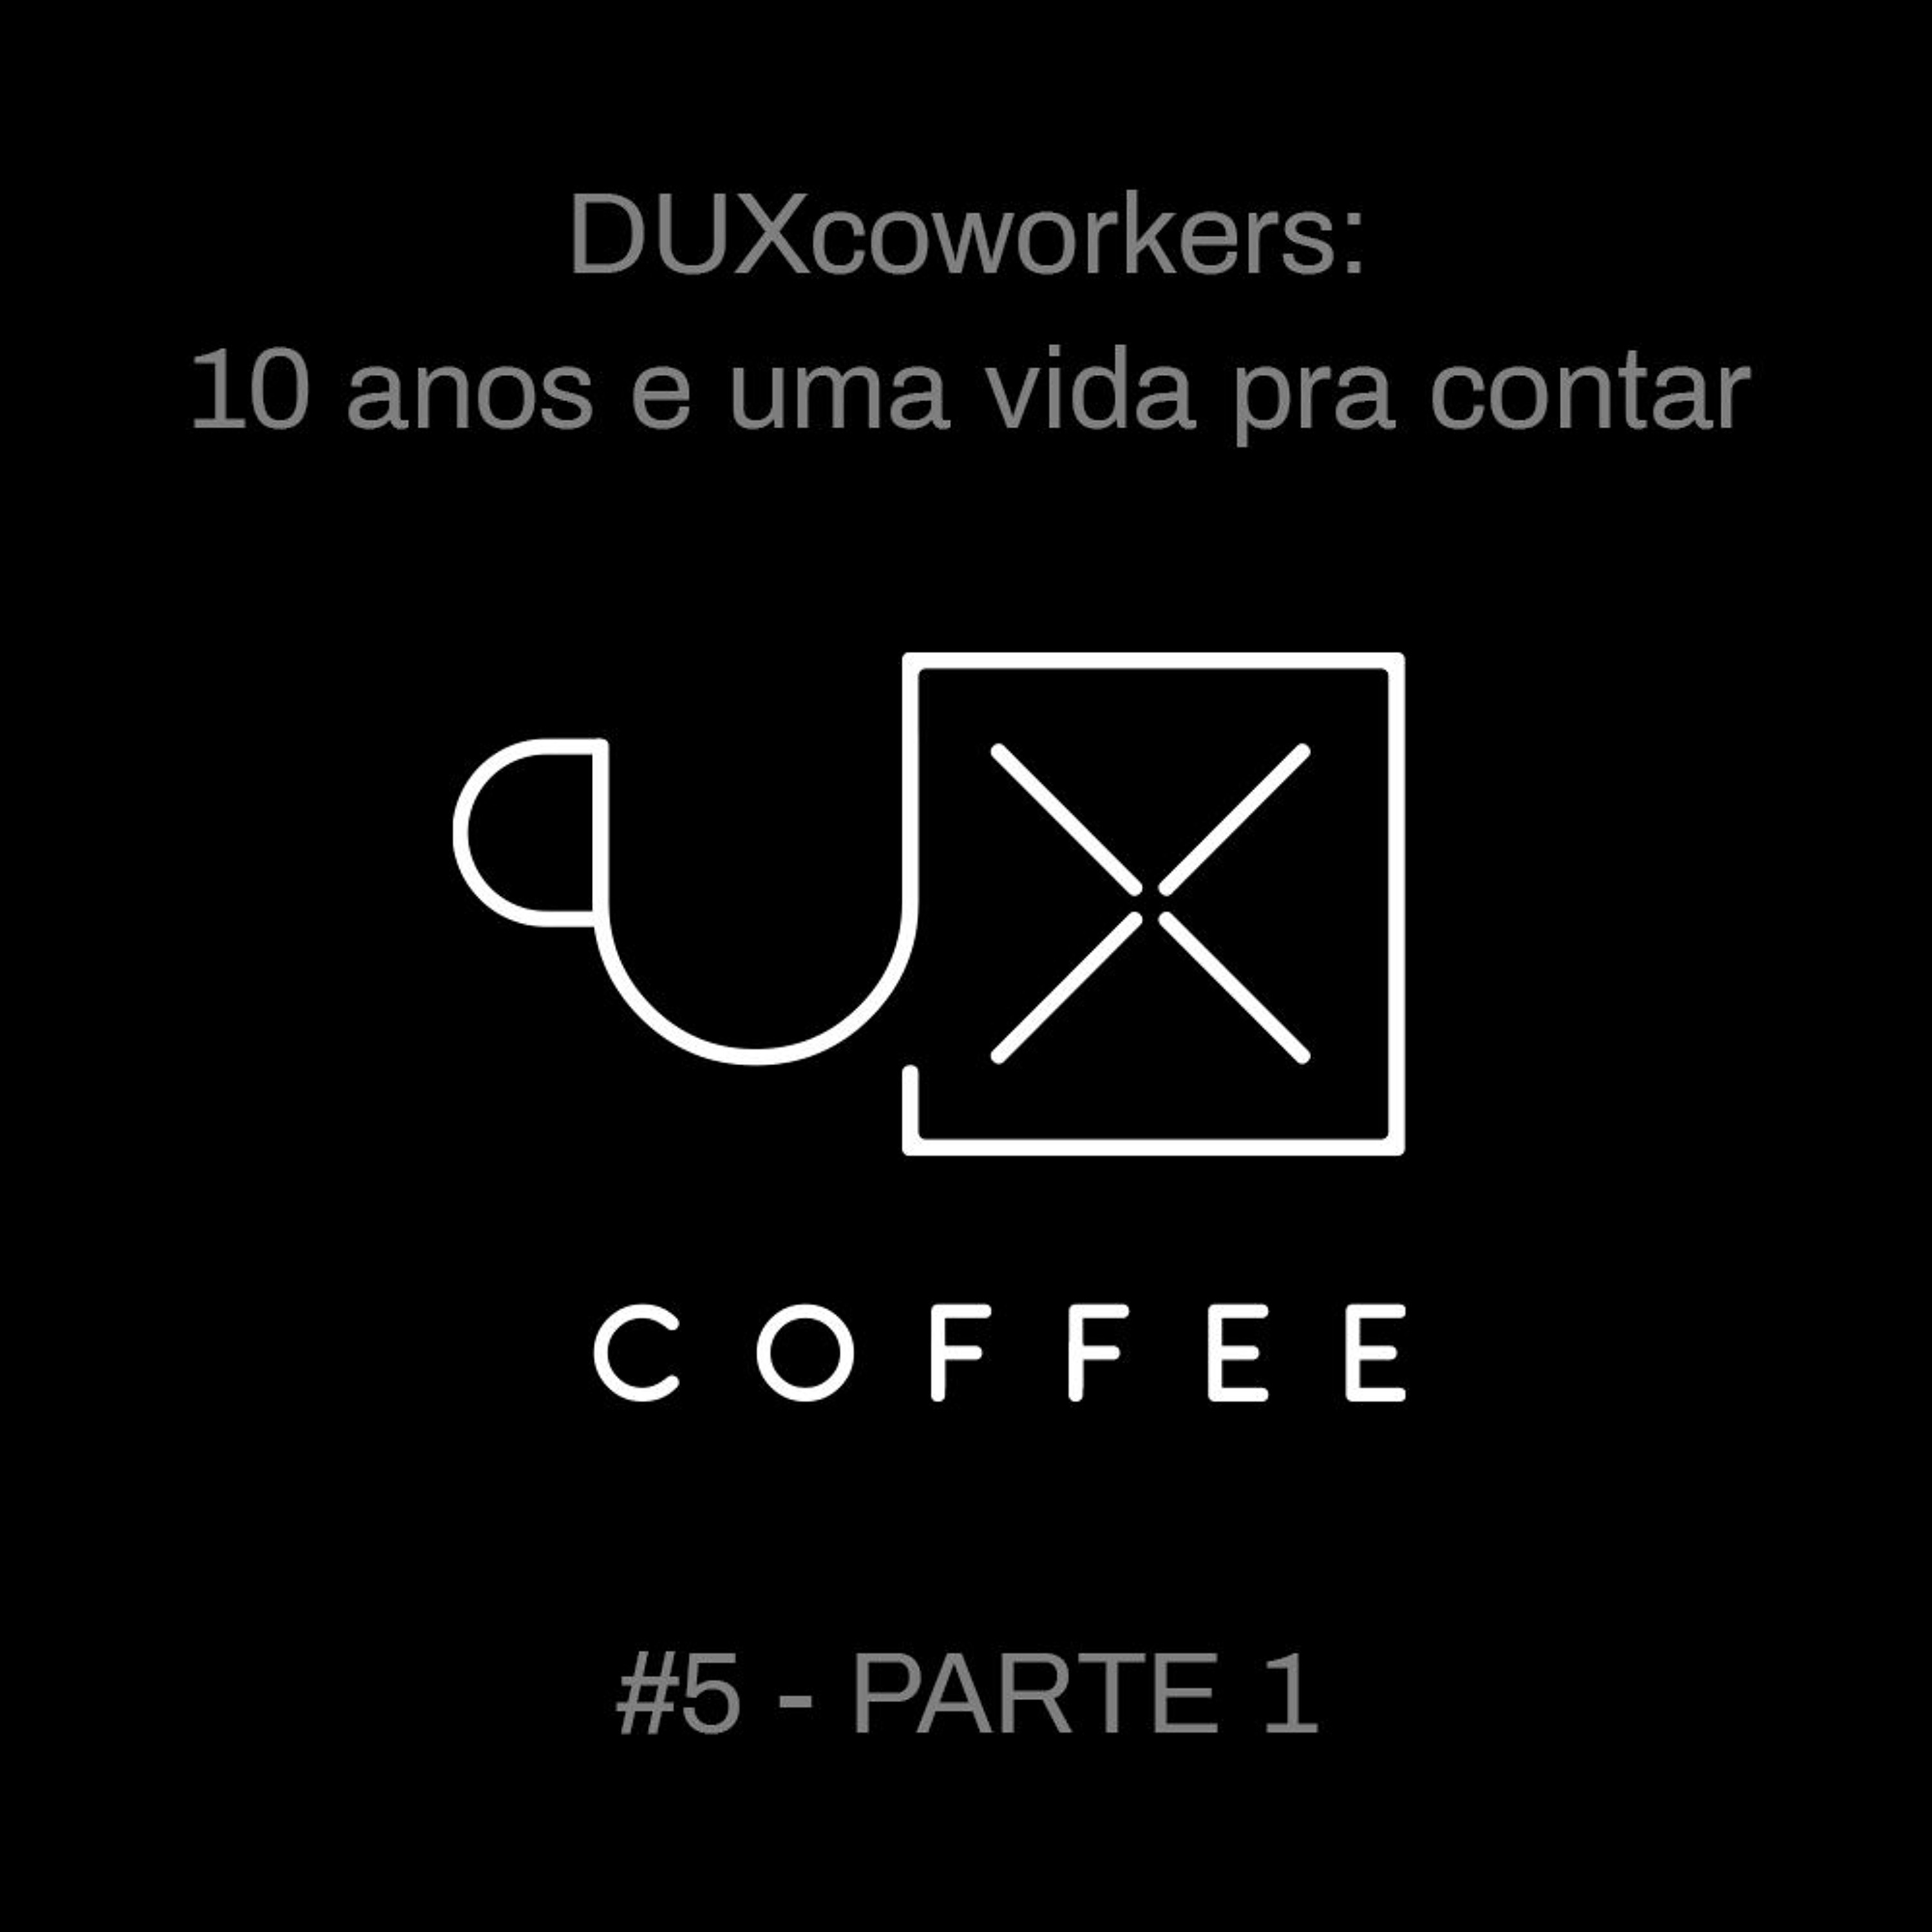 013- UXcoffee#5 - 10 anos e uma vida pra contar - ep.1